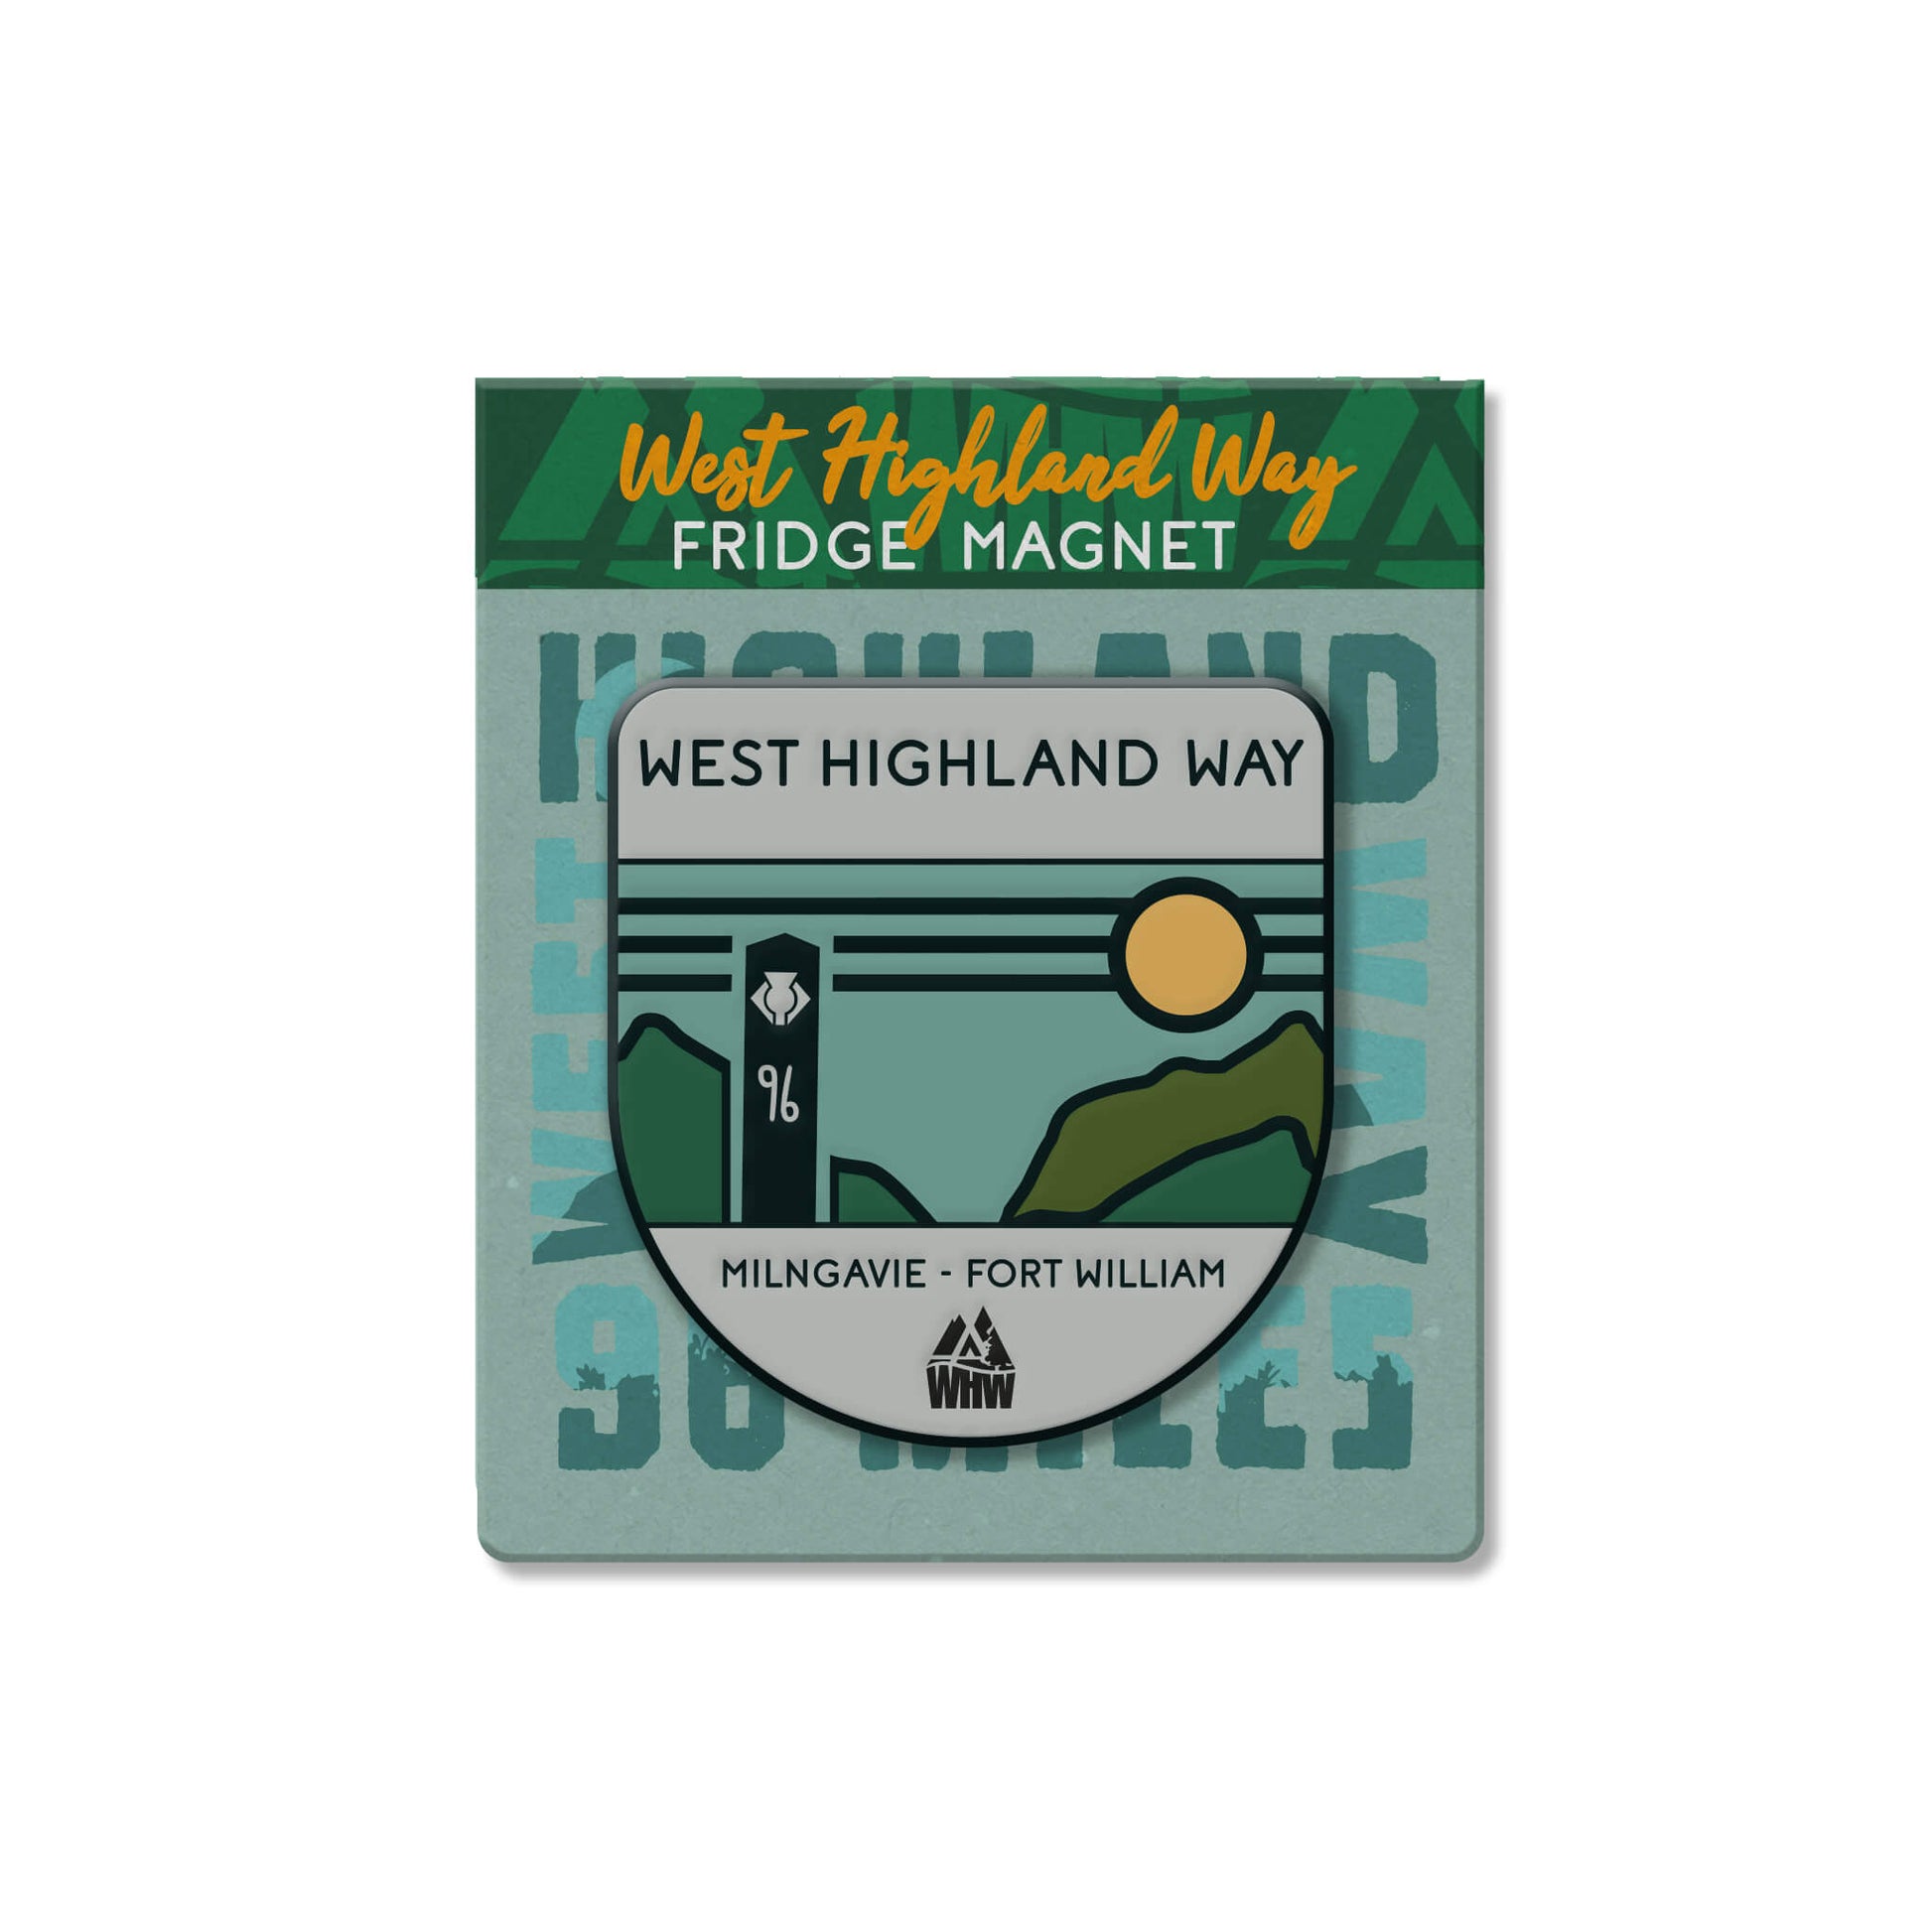 West Highland Way Fridge Magnet